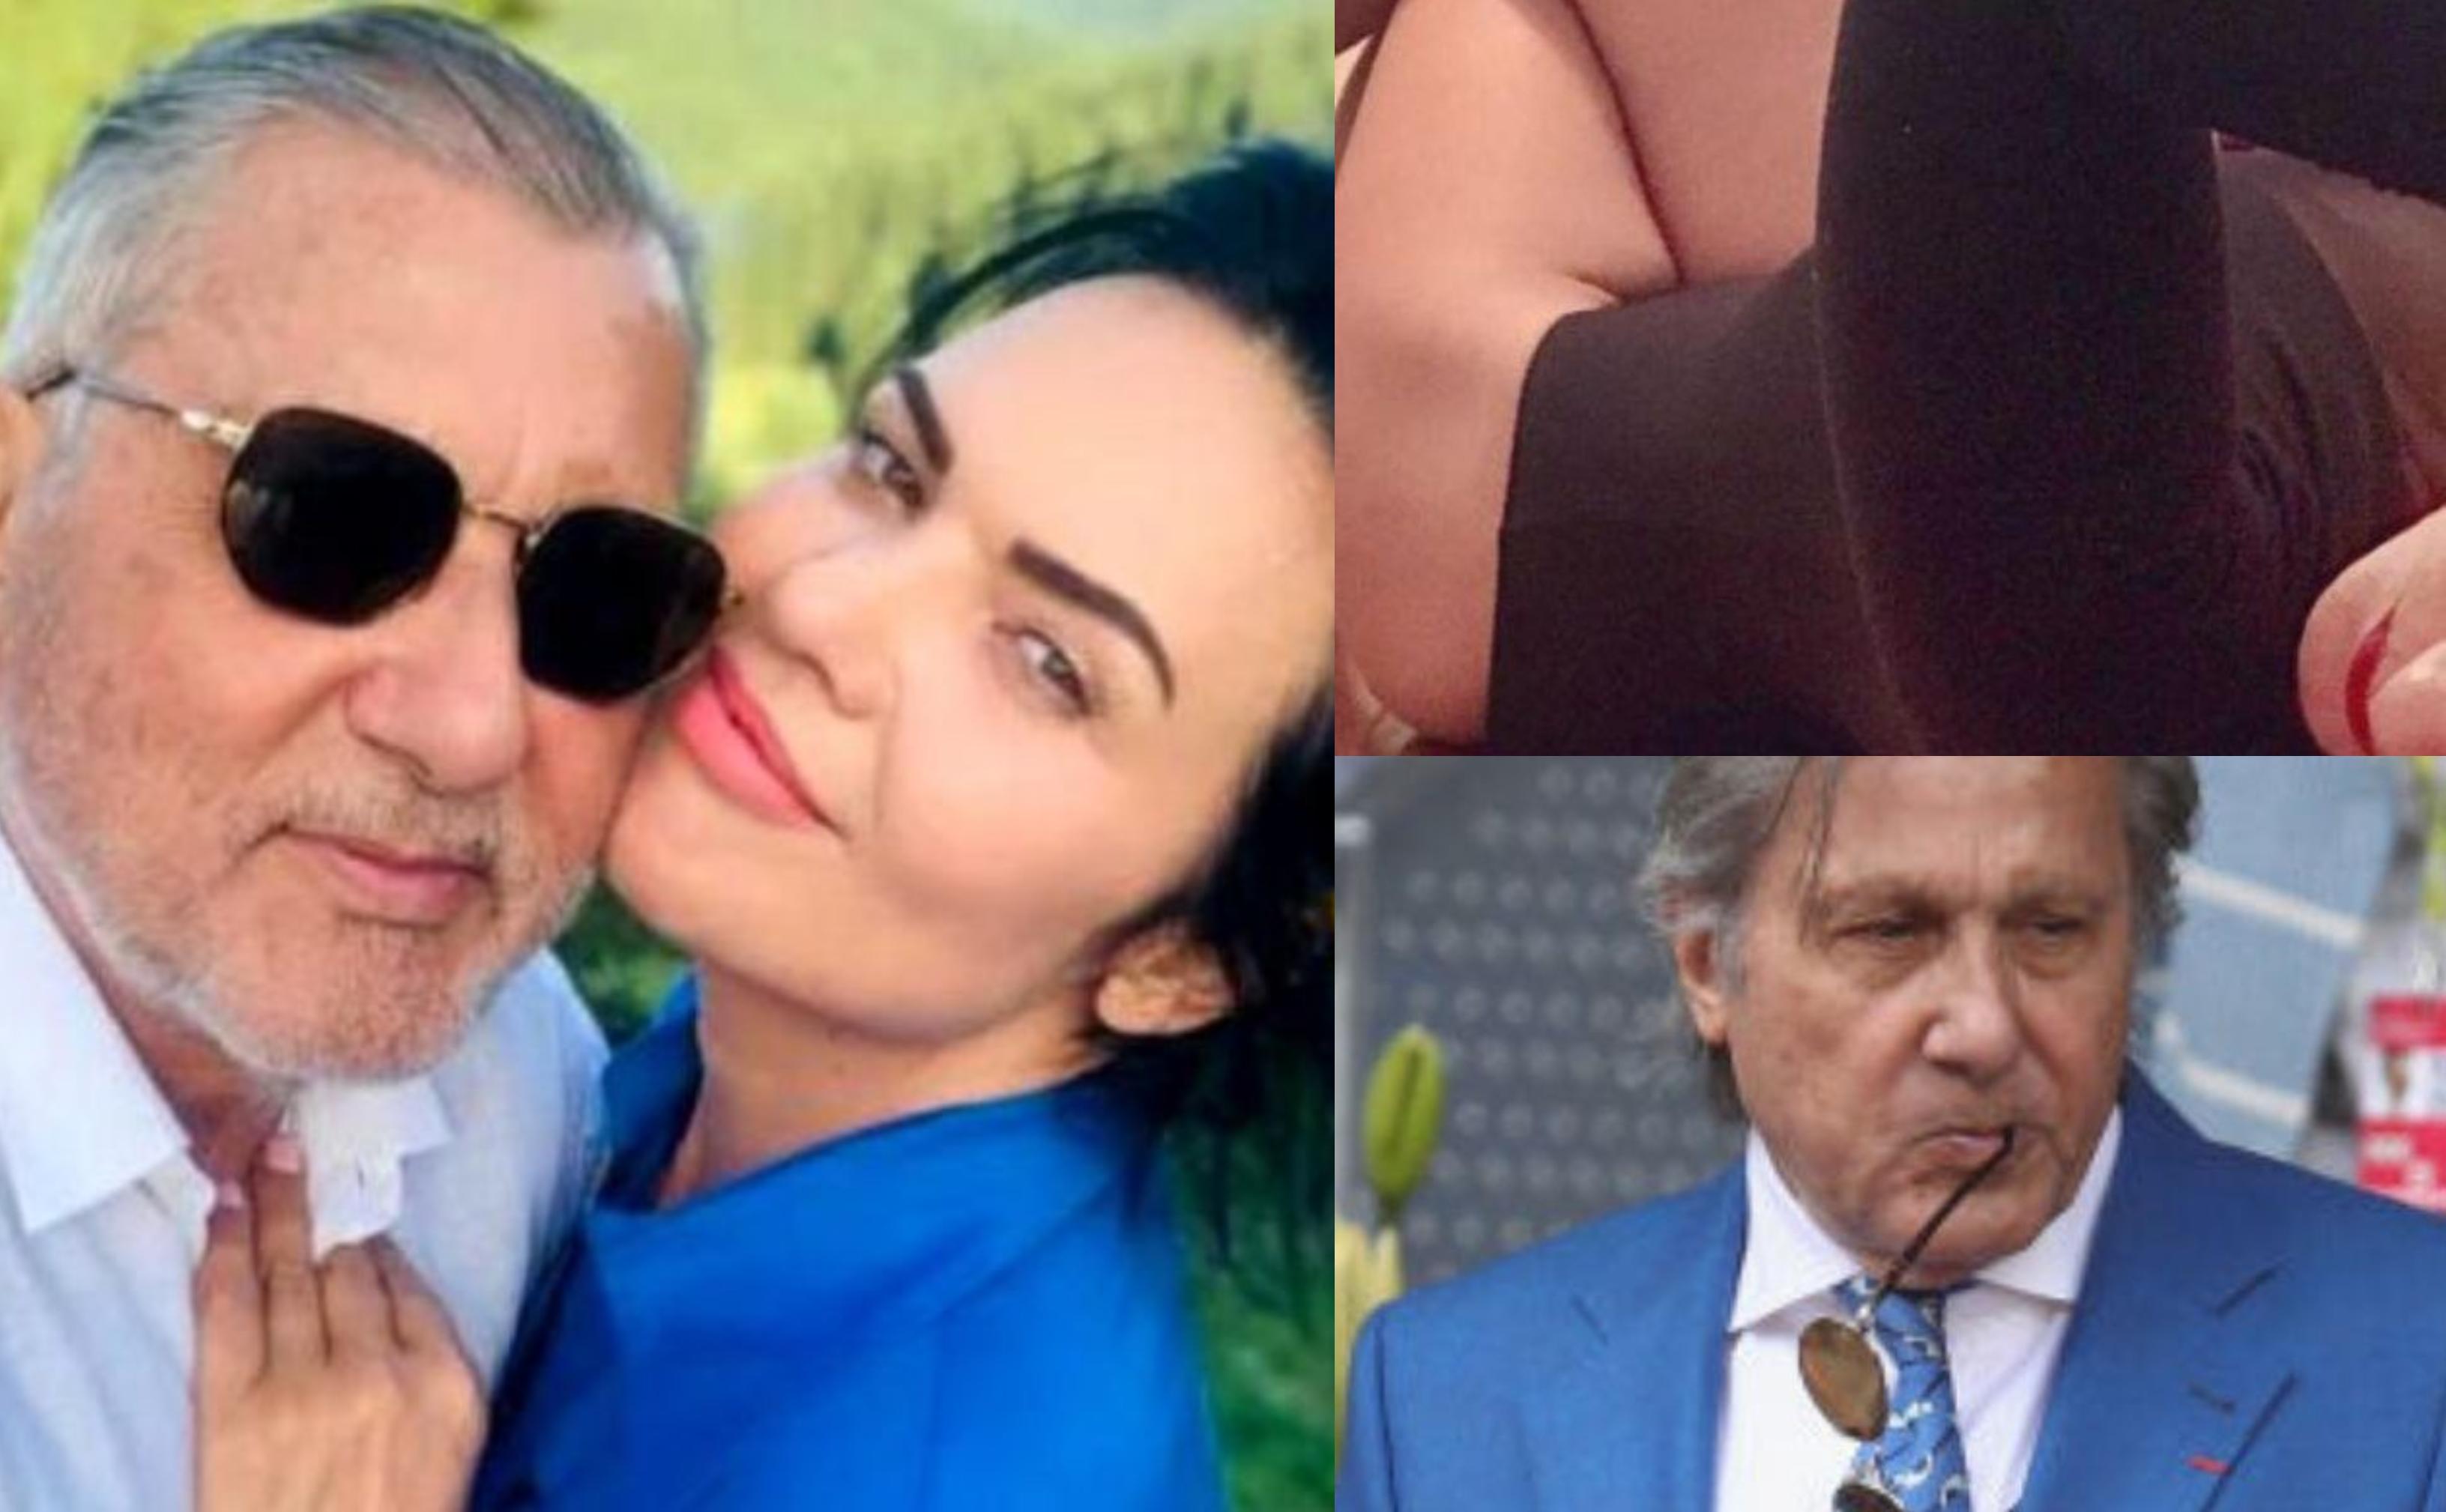 Reacția Ioanei Năstase, după ce fiica lui Ilie Năstase a făcut declaraţii controversate și livrează conținut pentru adulți